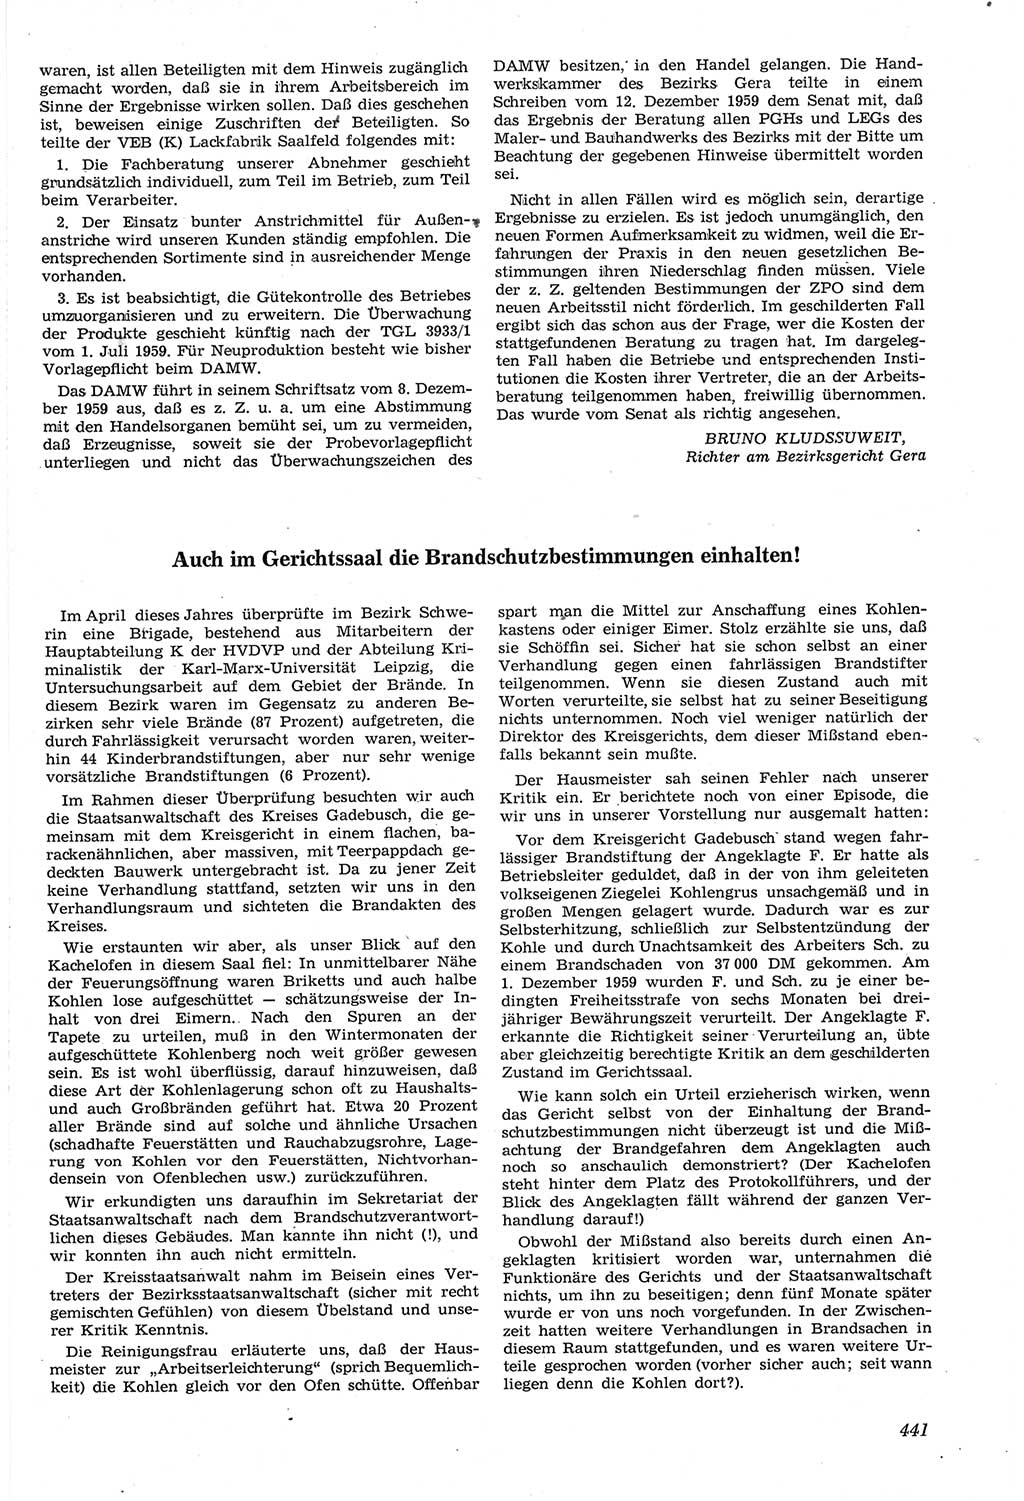 Neue Justiz (NJ), Zeitschrift für Recht und Rechtswissenschaft [Deutsche Demokratische Republik (DDR)], 14. Jahrgang 1960, Seite 441 (NJ DDR 1960, S. 441)